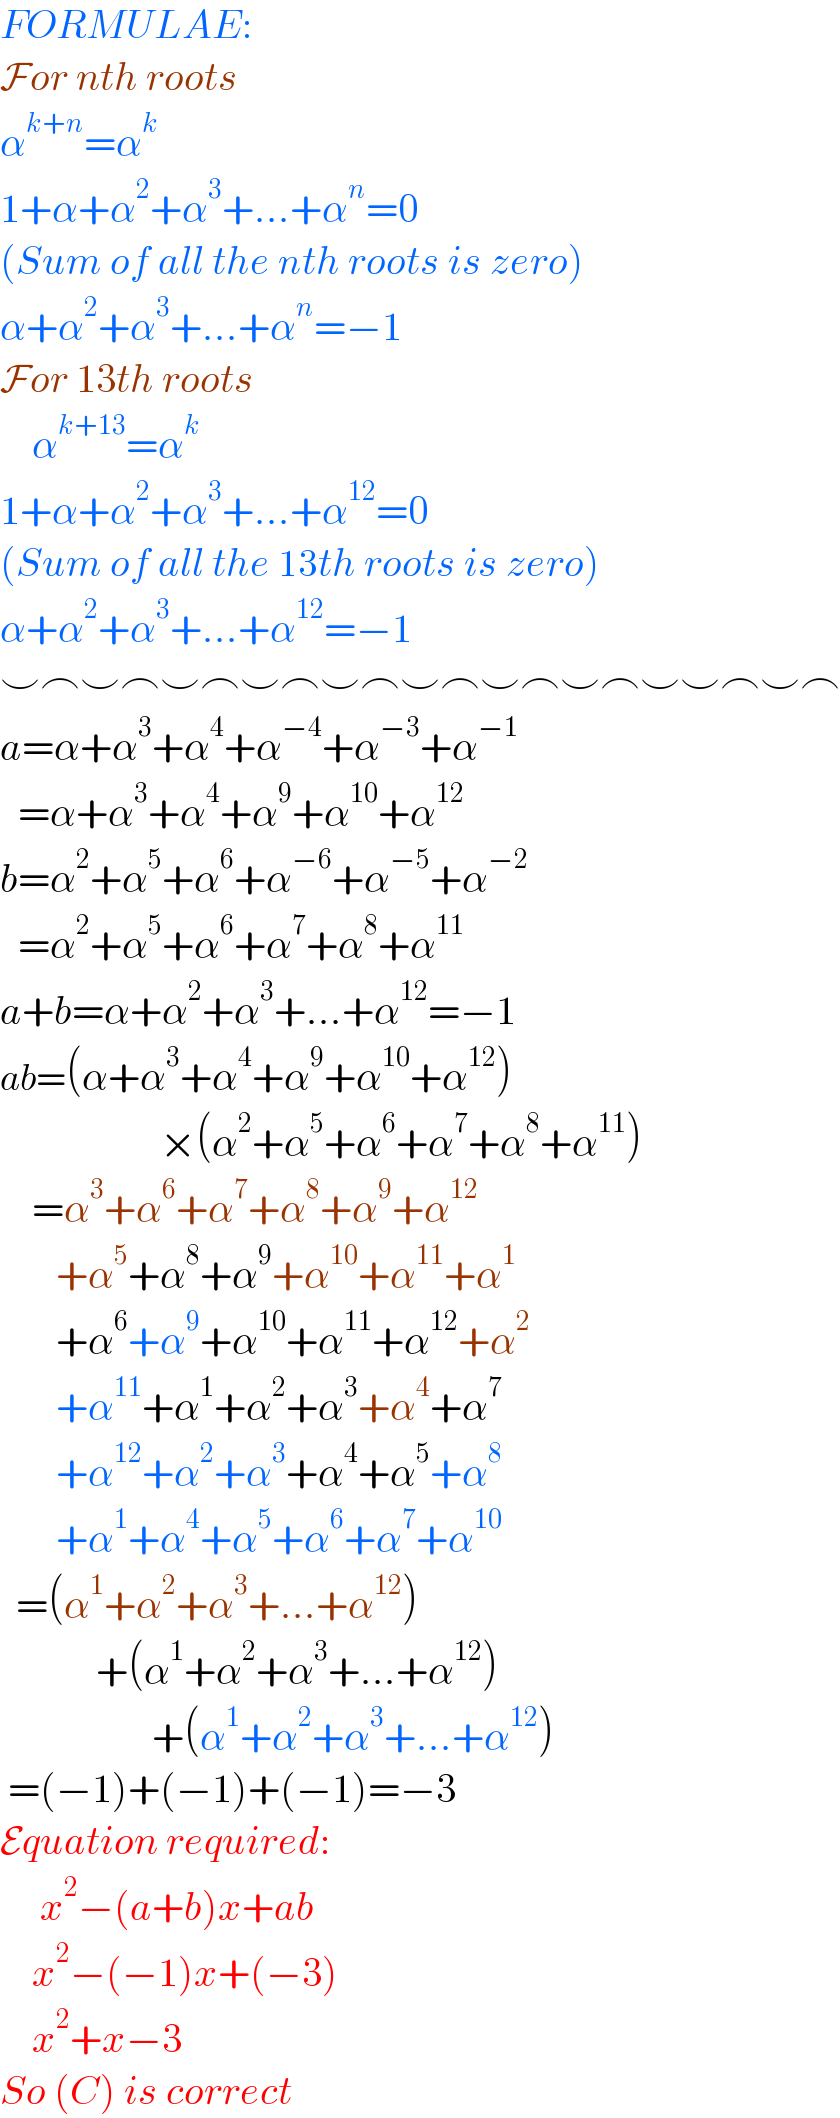 FORMULAE:  For nth roots  α^(k+n) =α^k   1+α+α^2 +α^3 +...+α^n =0  (Sum of all the nth roots is zero)  α+α^2 +α^3 +...+α^n =−1  For 13th roots      α^(k+13) =α^k   1+α+α^2 +α^3 +...+α^(12) =0  (Sum of all the 13th roots is zero)  α+α^2 +α^3 +...+α^(12) =−1  ⌣⌢⌣⌢⌣⌢⌣⌢⌣⌢⌣⌢⌣⌢⌣⌢⌣⌣⌢⌣⌢  a=α+α^3 +α^4 +α^(−4) +α^(−3) +α^(−1)      =α+α^3 +α^4 +α^9 +α^(10) +α^(12)   b=α^2 +α^5 +α^6 +α^(−6) +α^(−5) +α^(−2)      =α^2 +α^5 +α^6 +α^7 +α^8 +α^(11)   a+b=α+α^2 +α^3 +...+α^(12) =−1  ab=(α+α^3 +α^4 +α^9 +α^(10) +α^(12) )                      ×(α^2 +α^5 +α^6 +α^7 +α^8 +α^(11) )      =α^3 +α^6 +α^7 +α^8 +α^9 +α^(12)          +α^5 +α^8 +α^9 +α^(10) +α^(11) +α^1          +α^6 +α^9 +α^(10) +α^(11) +α^(12) +α^2          +α^(11) +α^1 +α^2 +α^3 +α^4 +α^7          +α^(12) +α^2 +α^3 +α^4 +α^5 +α^8          +α^1 +α^4 +α^5 +α^6 +α^7 +α^(10)     =(α^1 +α^2 +α^3 +...+α^(12) )              +(α^1 +α^2 +α^3 +...+α^(12) )                     +(α^1 +α^2 +α^3 +...+α^(12) )   =(−1)+(−1)+(−1)=−3  Equation required:       x^2 −(a+b)x+ab      x^2 −(−1)x+(−3)      x^2 +x−3  So (C) is correct  